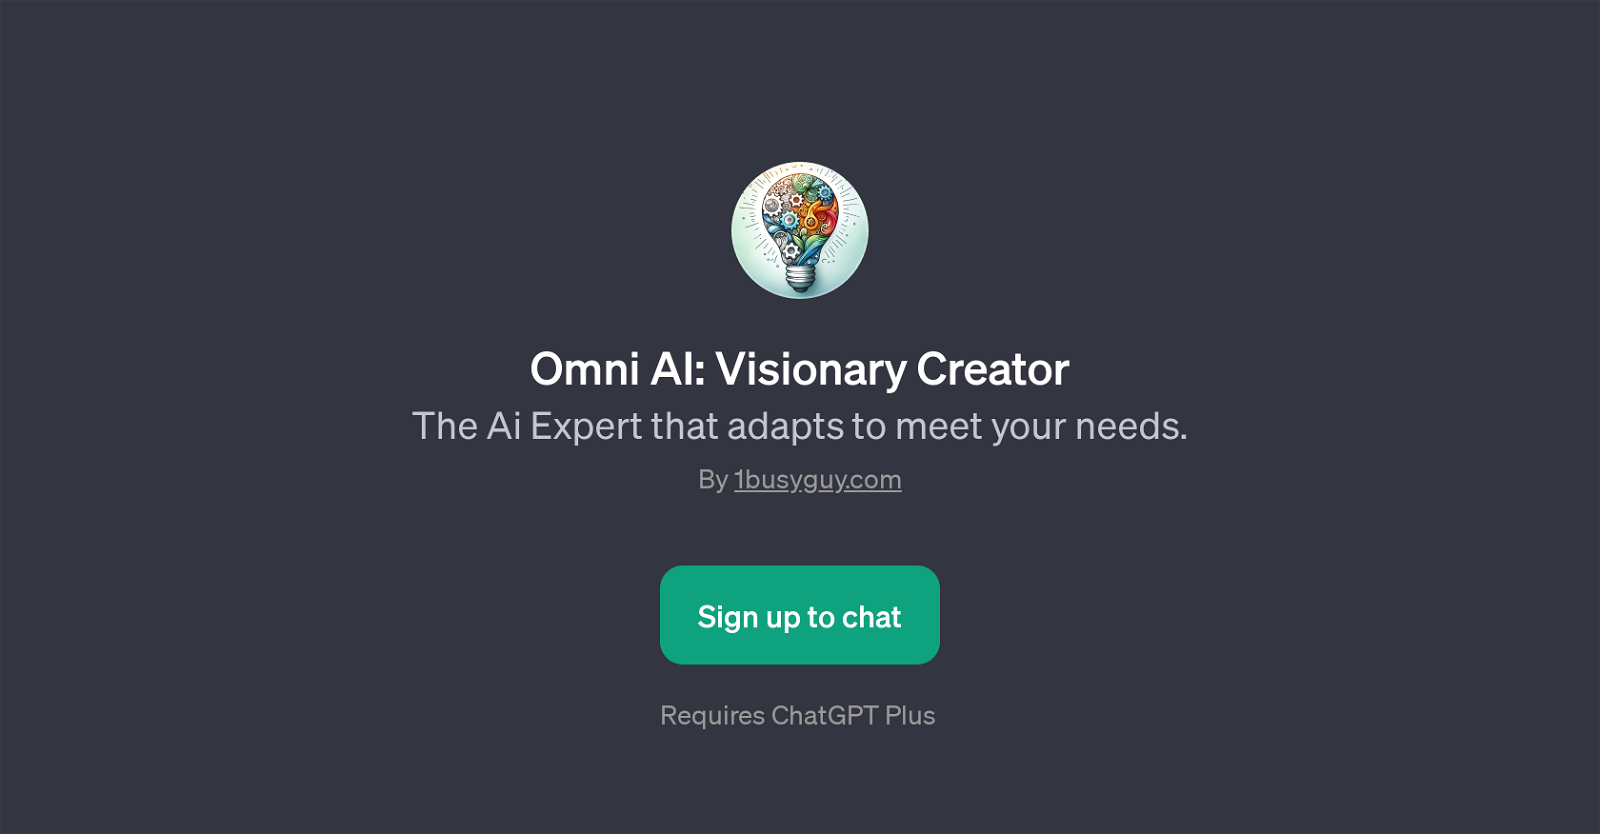 Omni AI: Visionary Creator website